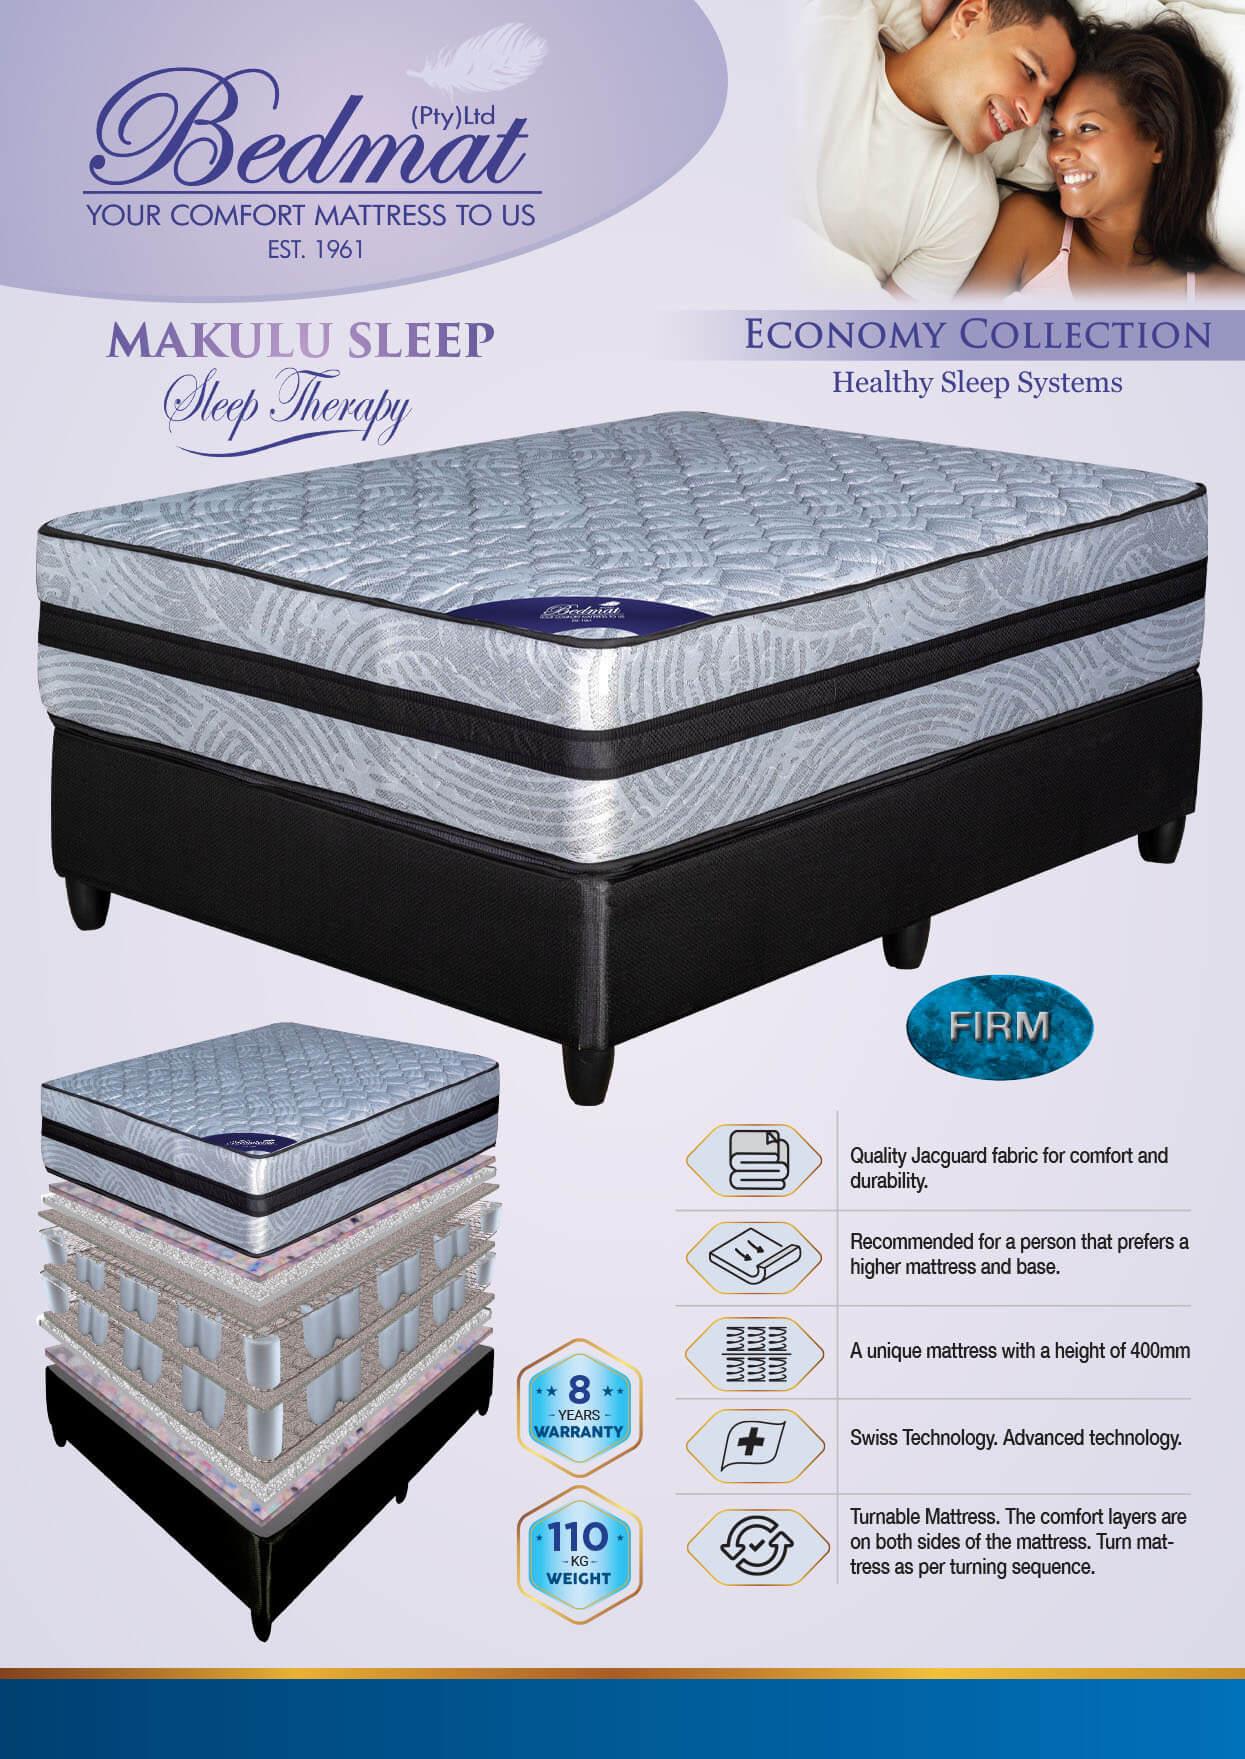 Makulu Sleep mattress and details